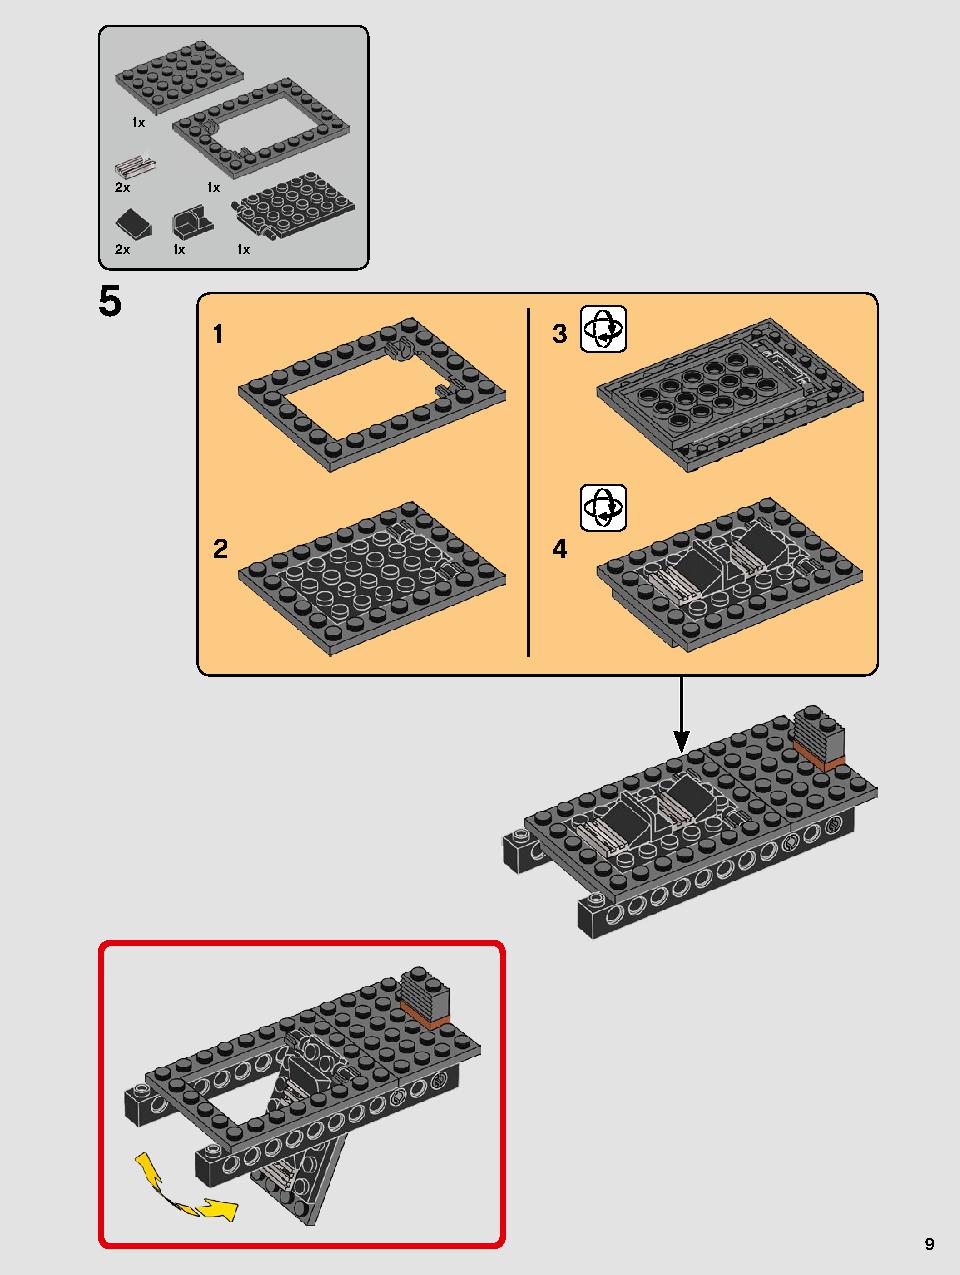 스타워즈 카일로 렌의 셔틀™ 75256 레고 세트 제품정보 레고 조립설명서 9 page